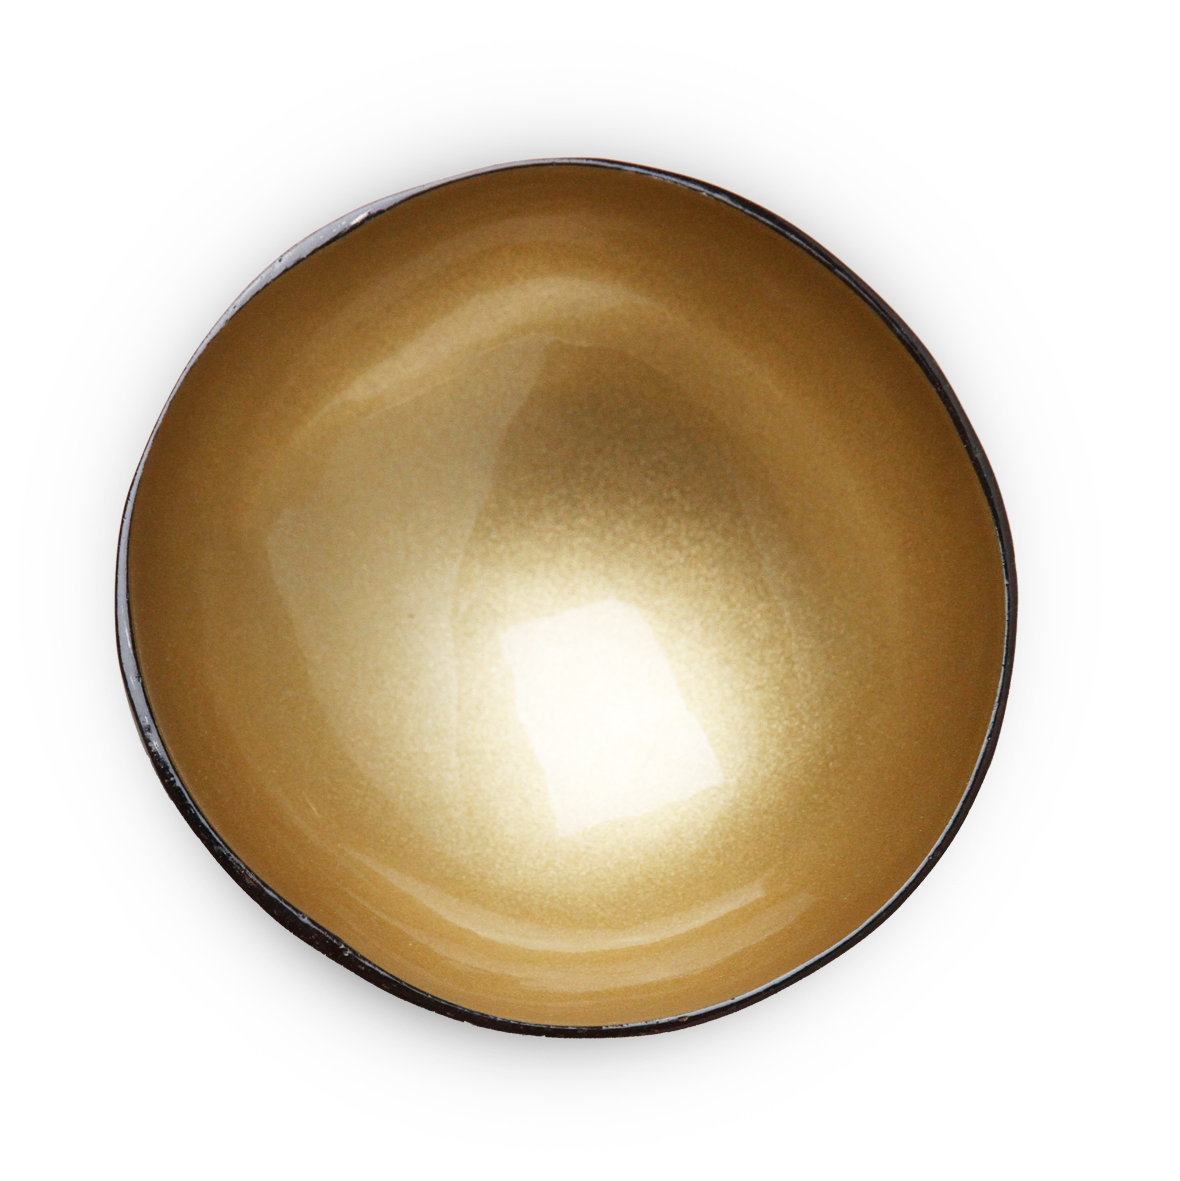 Kokoskommetje - Light Gold Metallic Paint